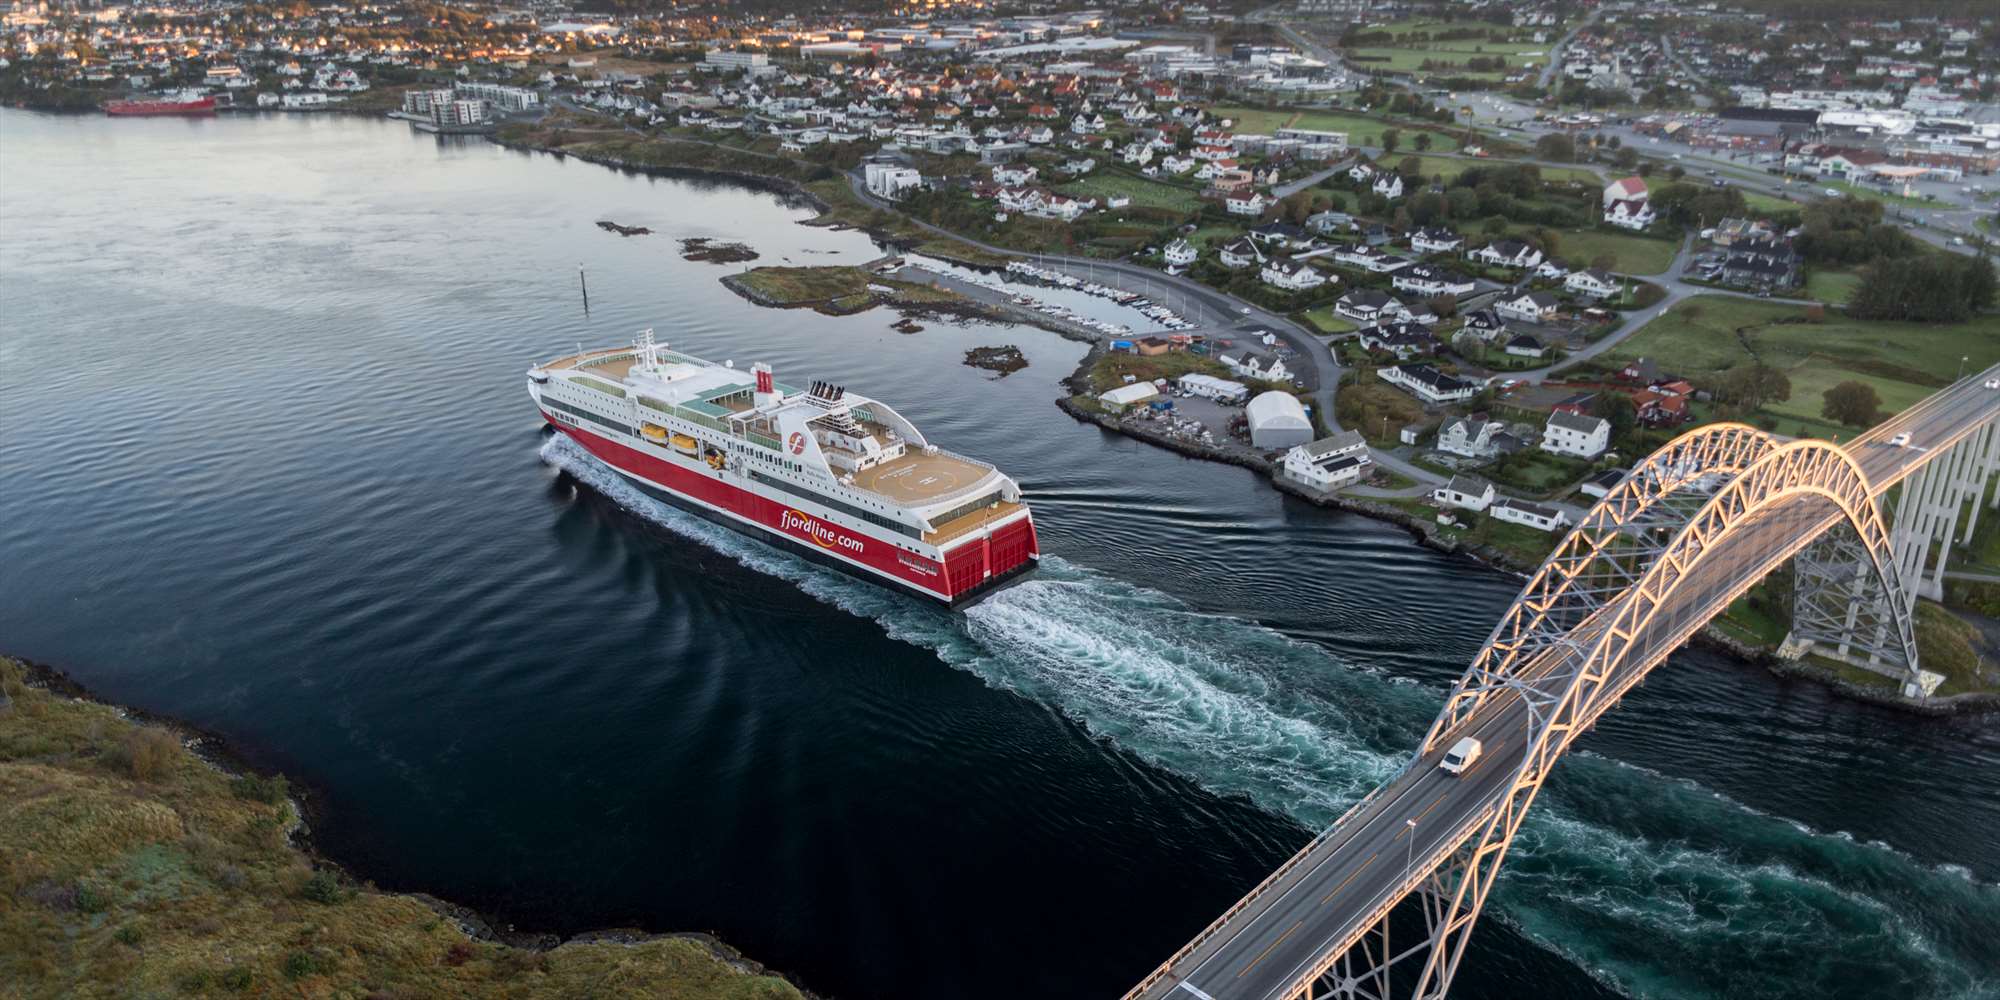 tema cruise fjordline